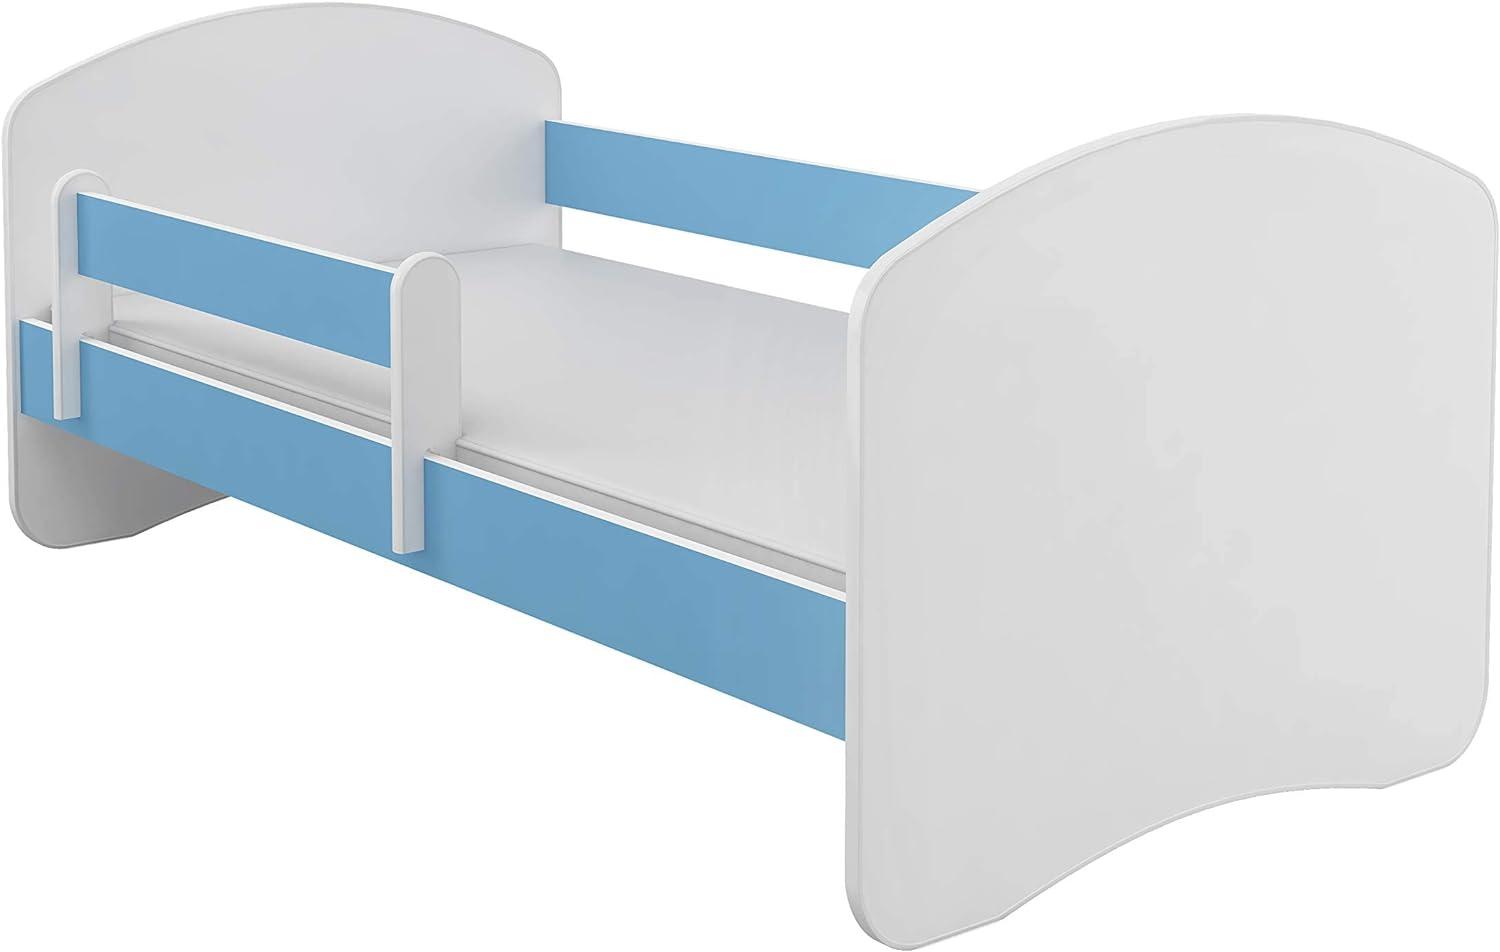 Kinderbett Jugendbett mit einer Schublade und Matratze Weiß ACMA II (160x80 cm, Blau) Bild 1